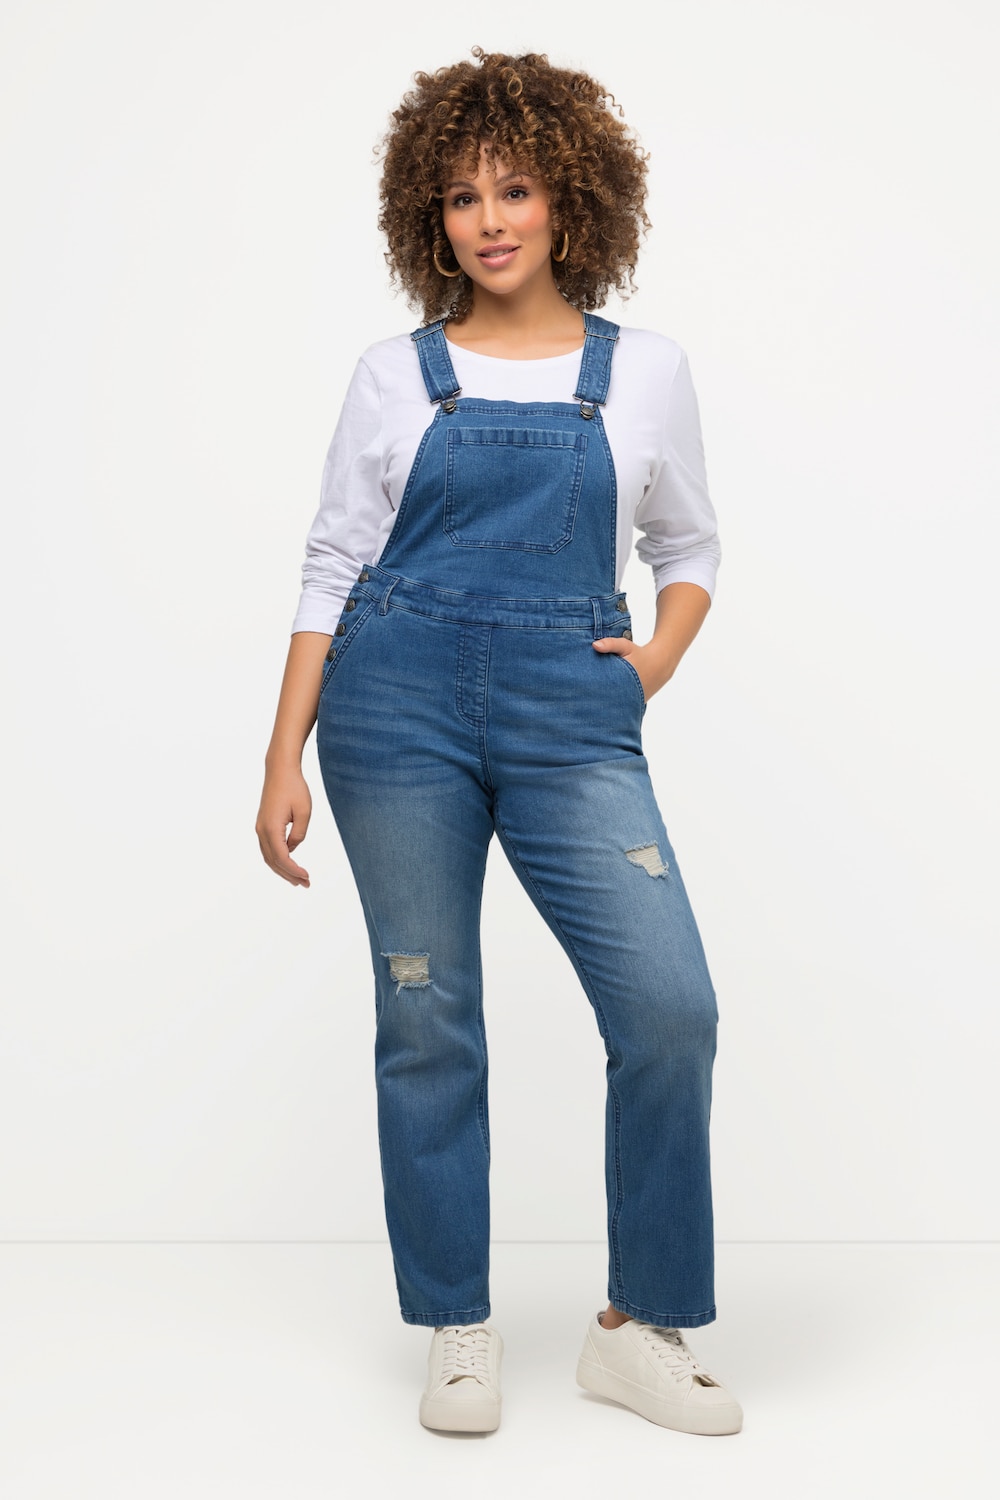 Große Größen Jeans-Latzhose, Damen, blau, Größe: 44, Baumwolle, Ulla Popken von Ulla Popken